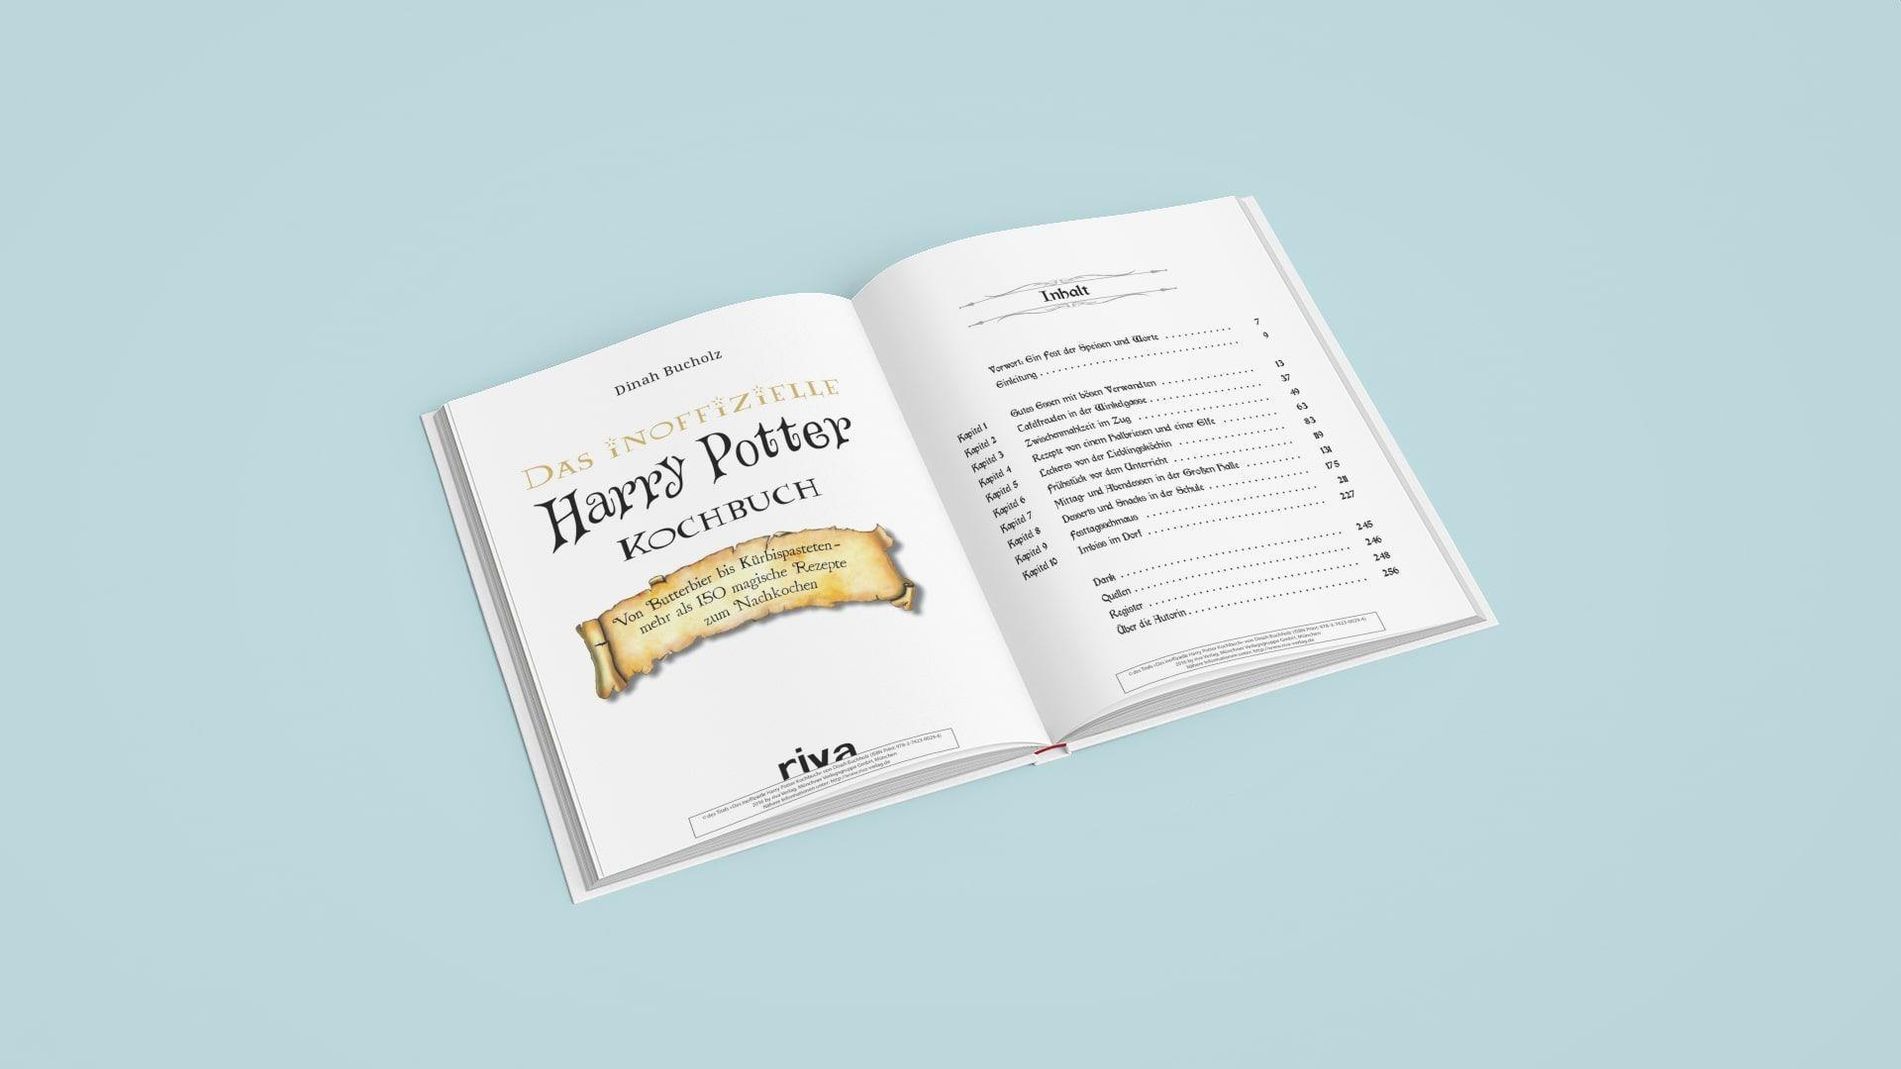 Das inoffizielle Harry-Potter-Kochbuch Buch versandkostenfrei - Weltbild.de